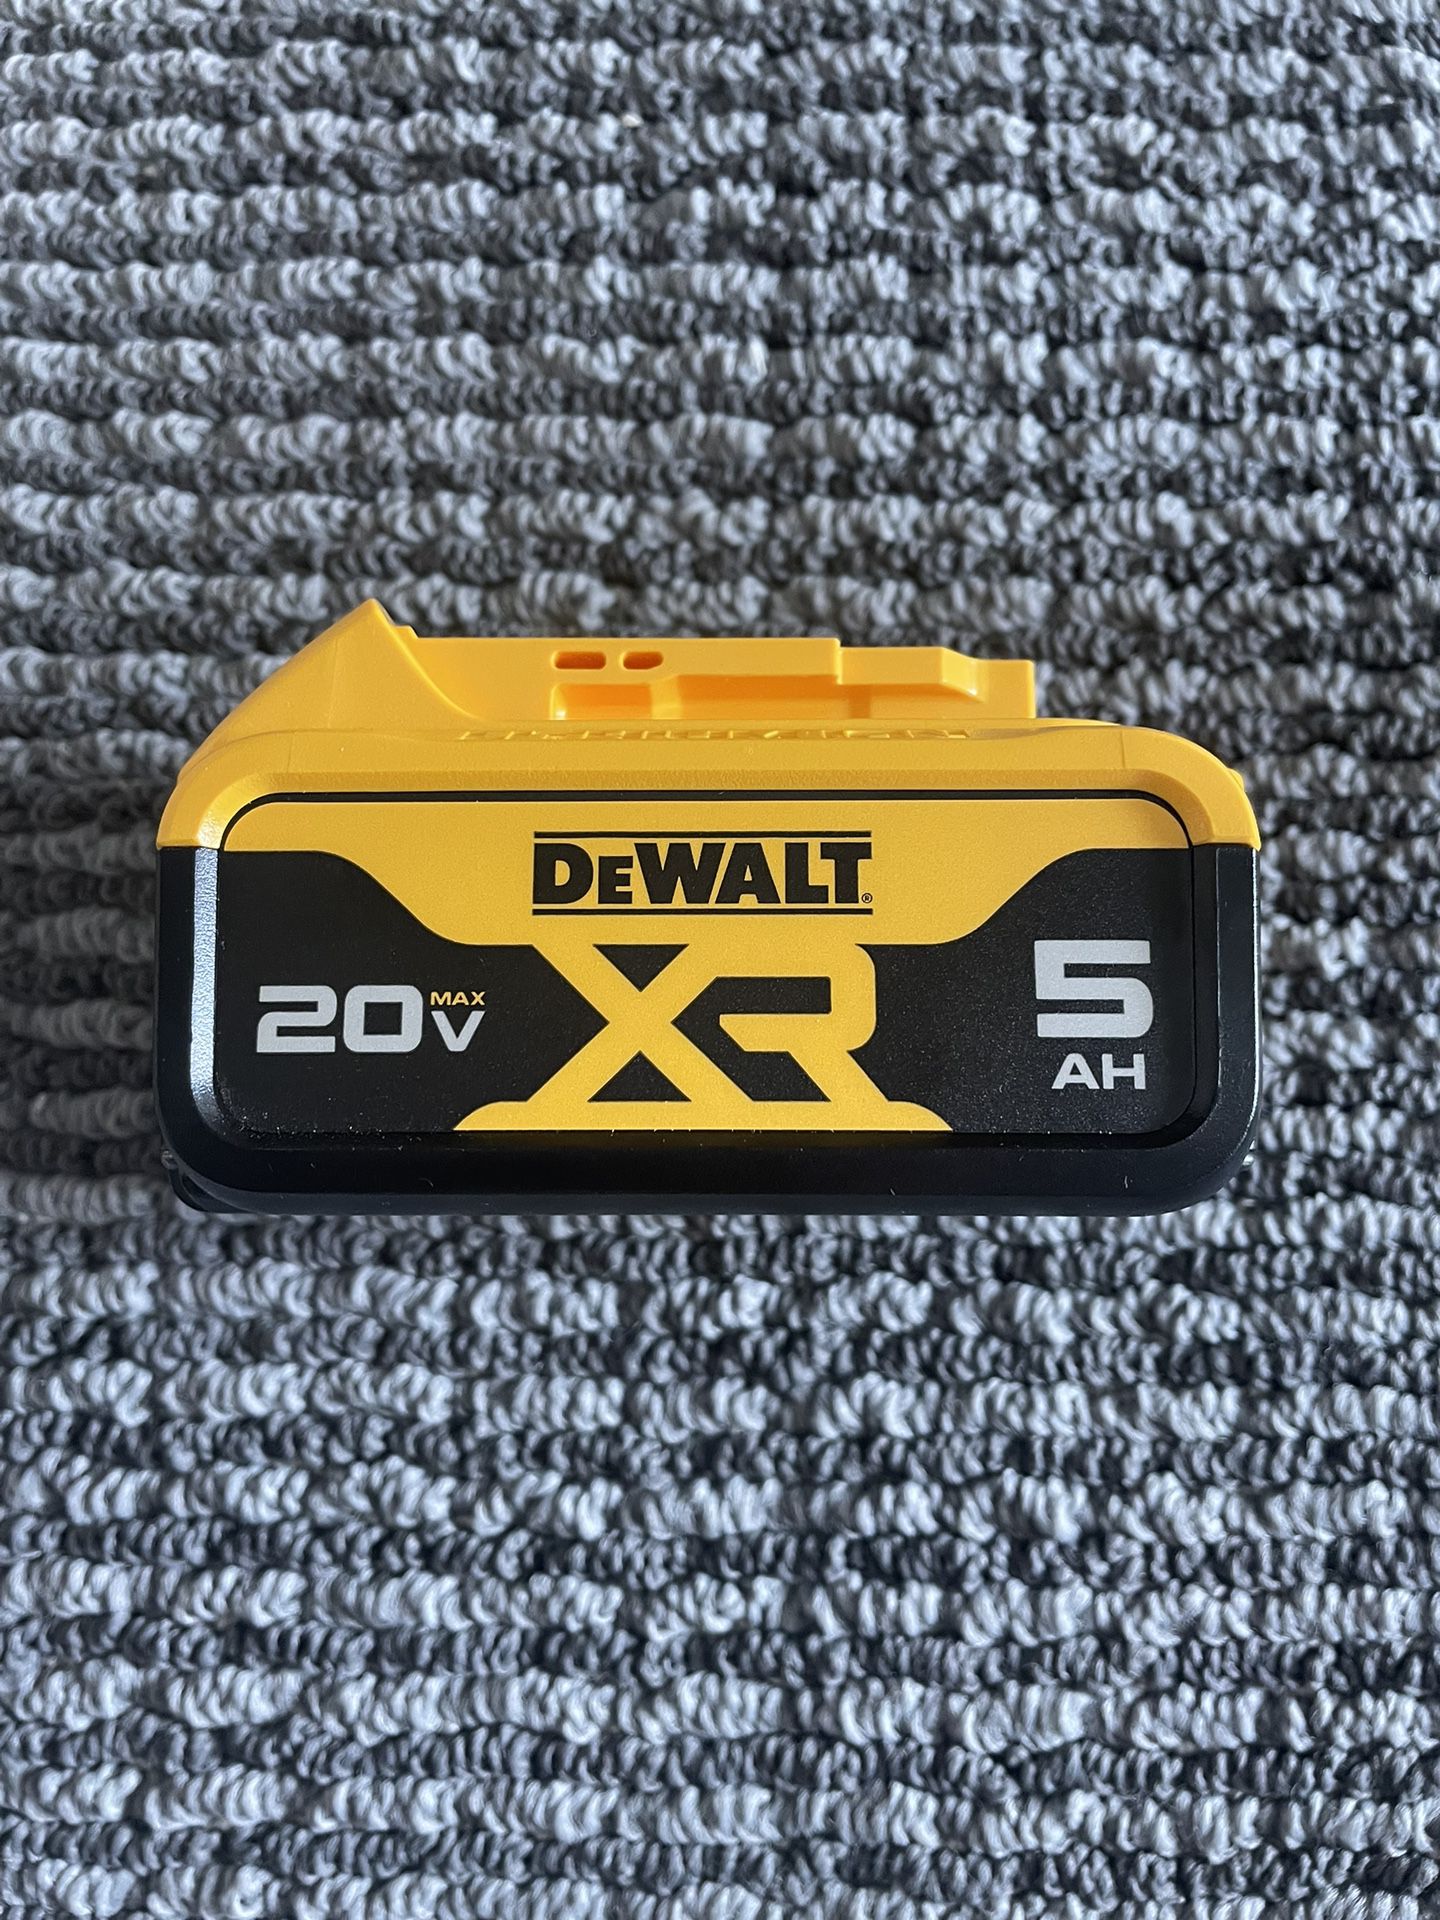 Dewalt 20v XR 5Ah Battery